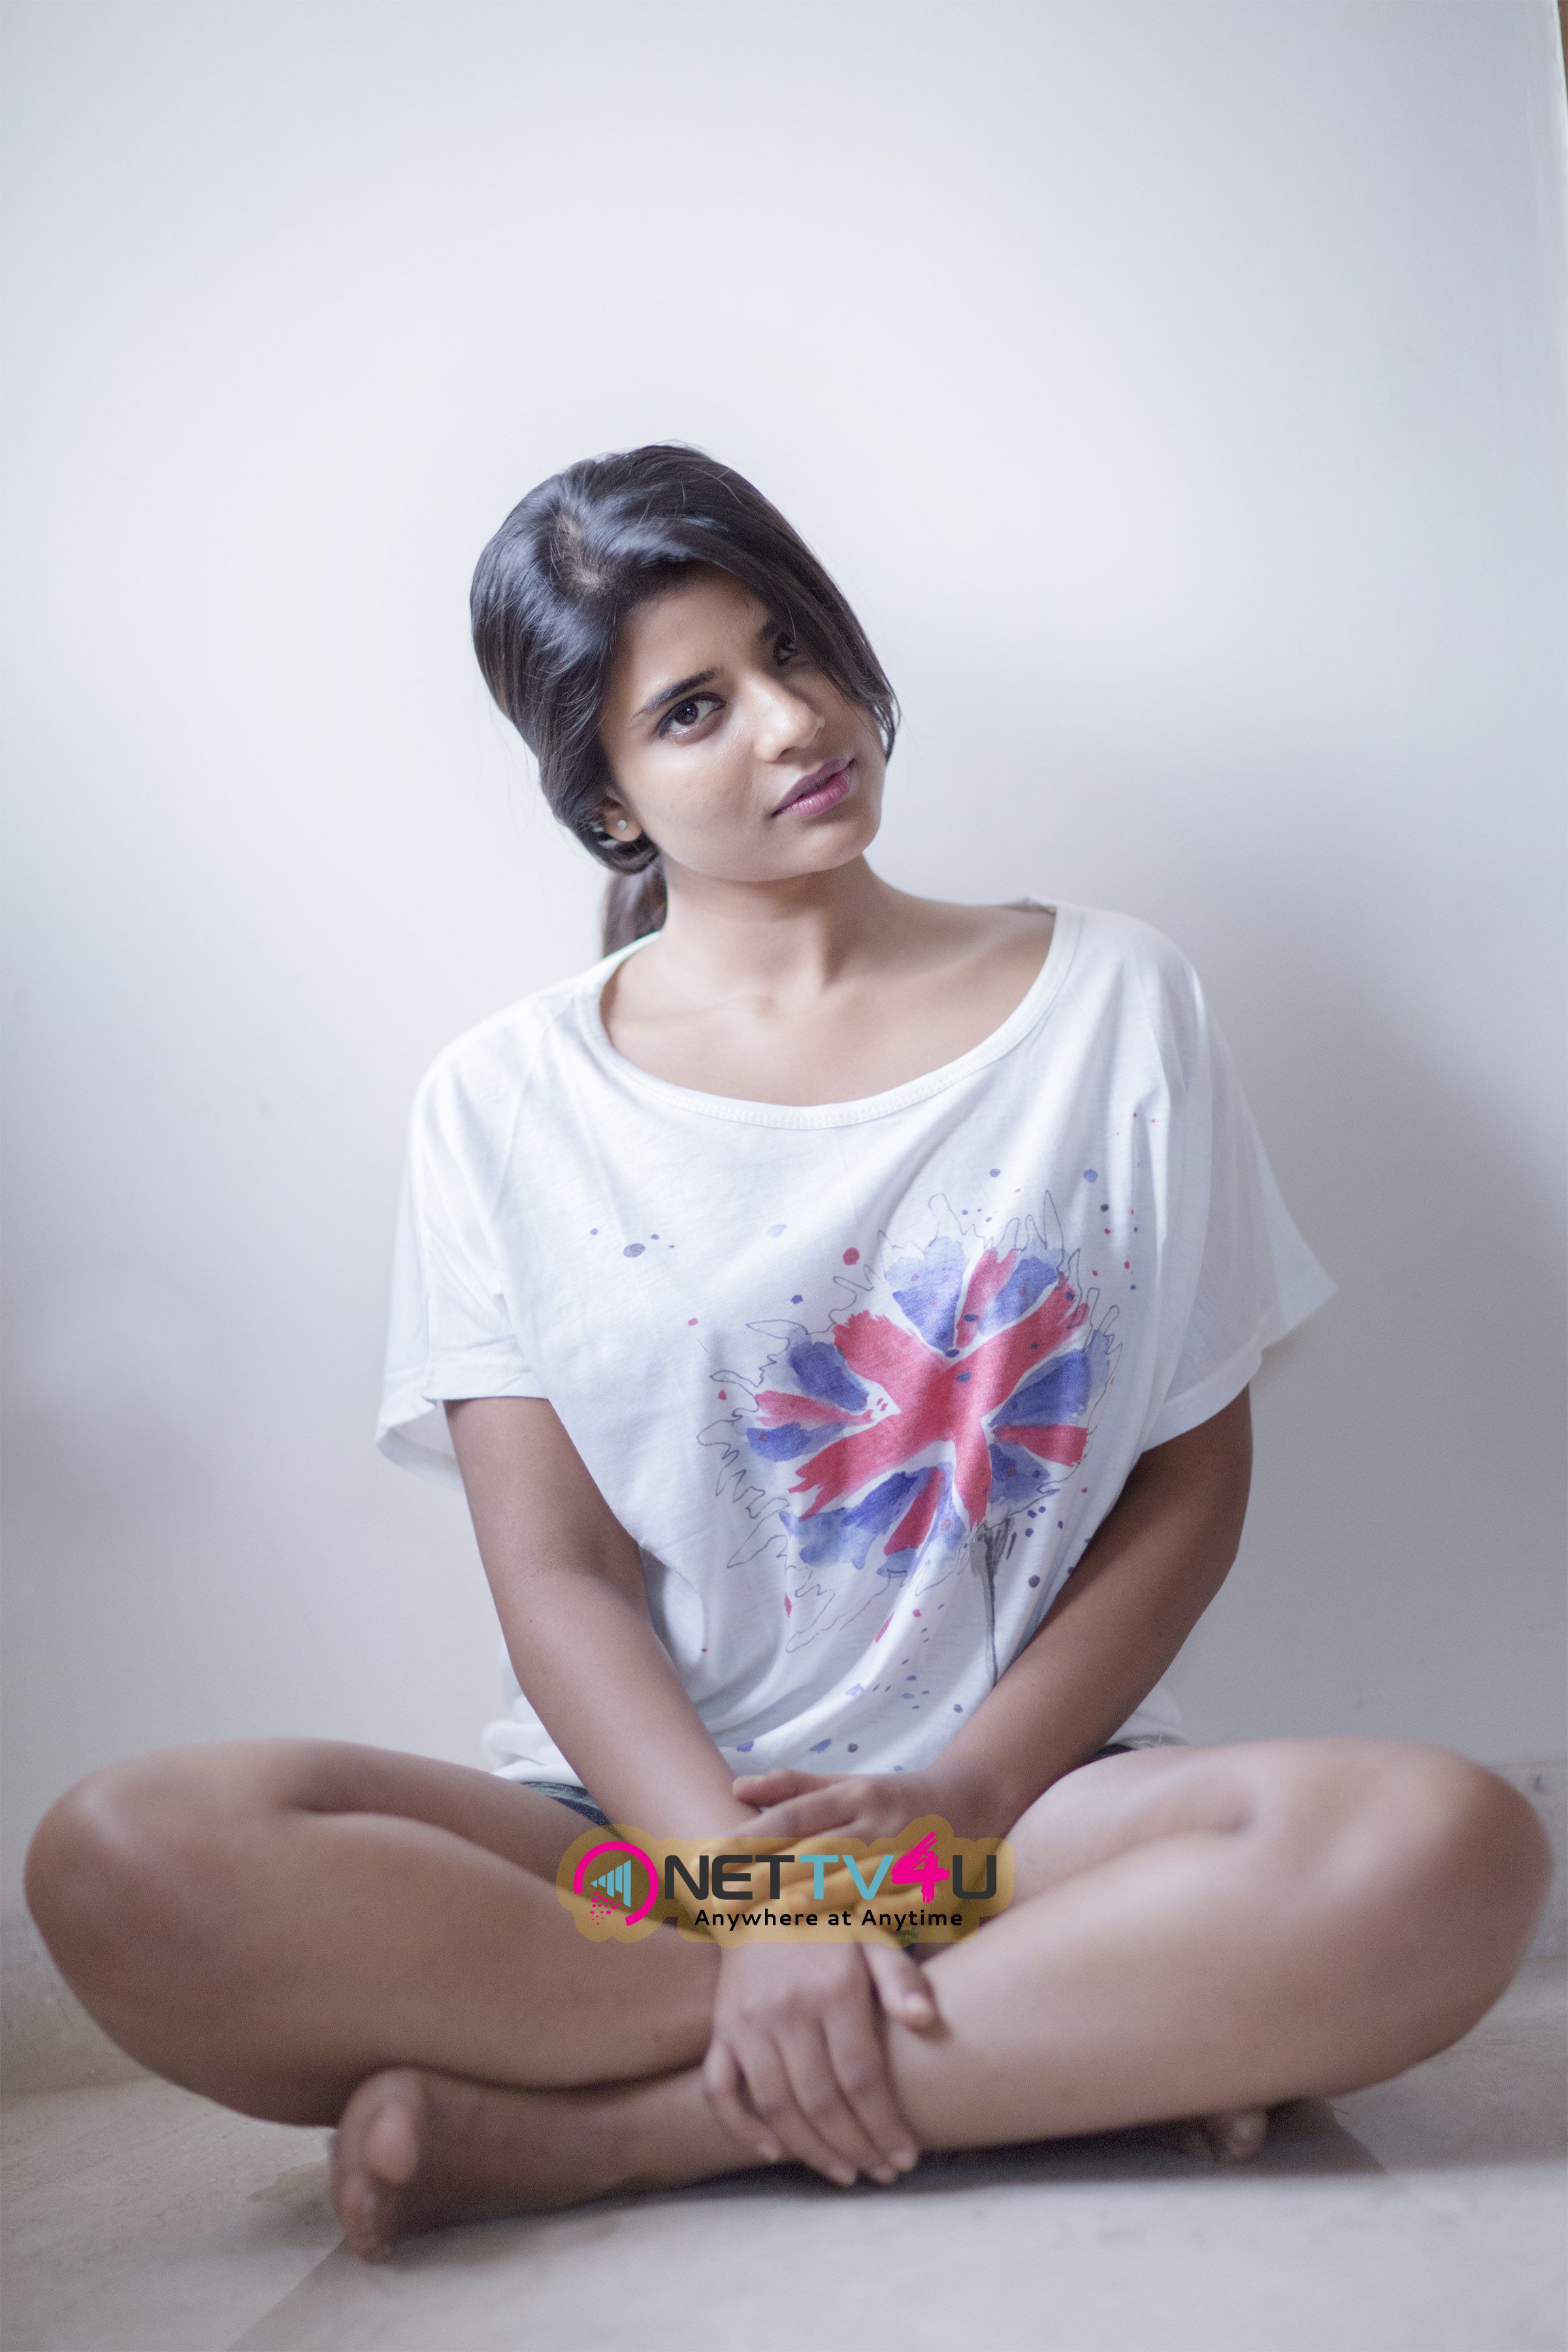 actress aishwarya rajesh photo gallery 22